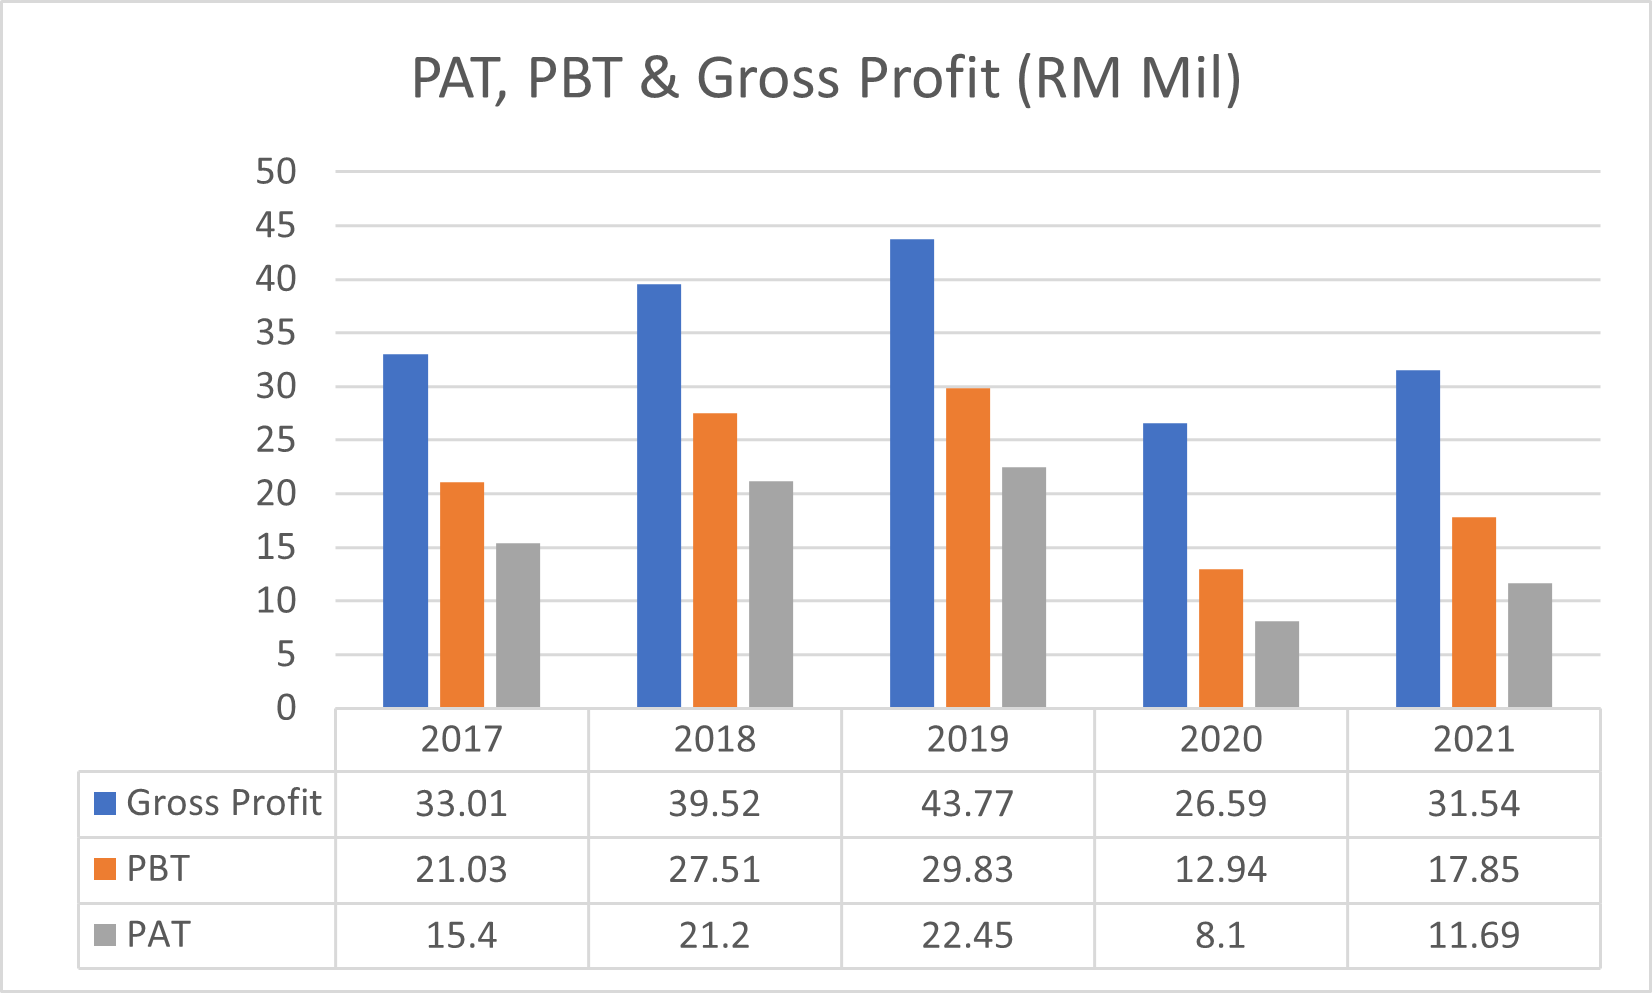 GP, PBT & PAT 2022